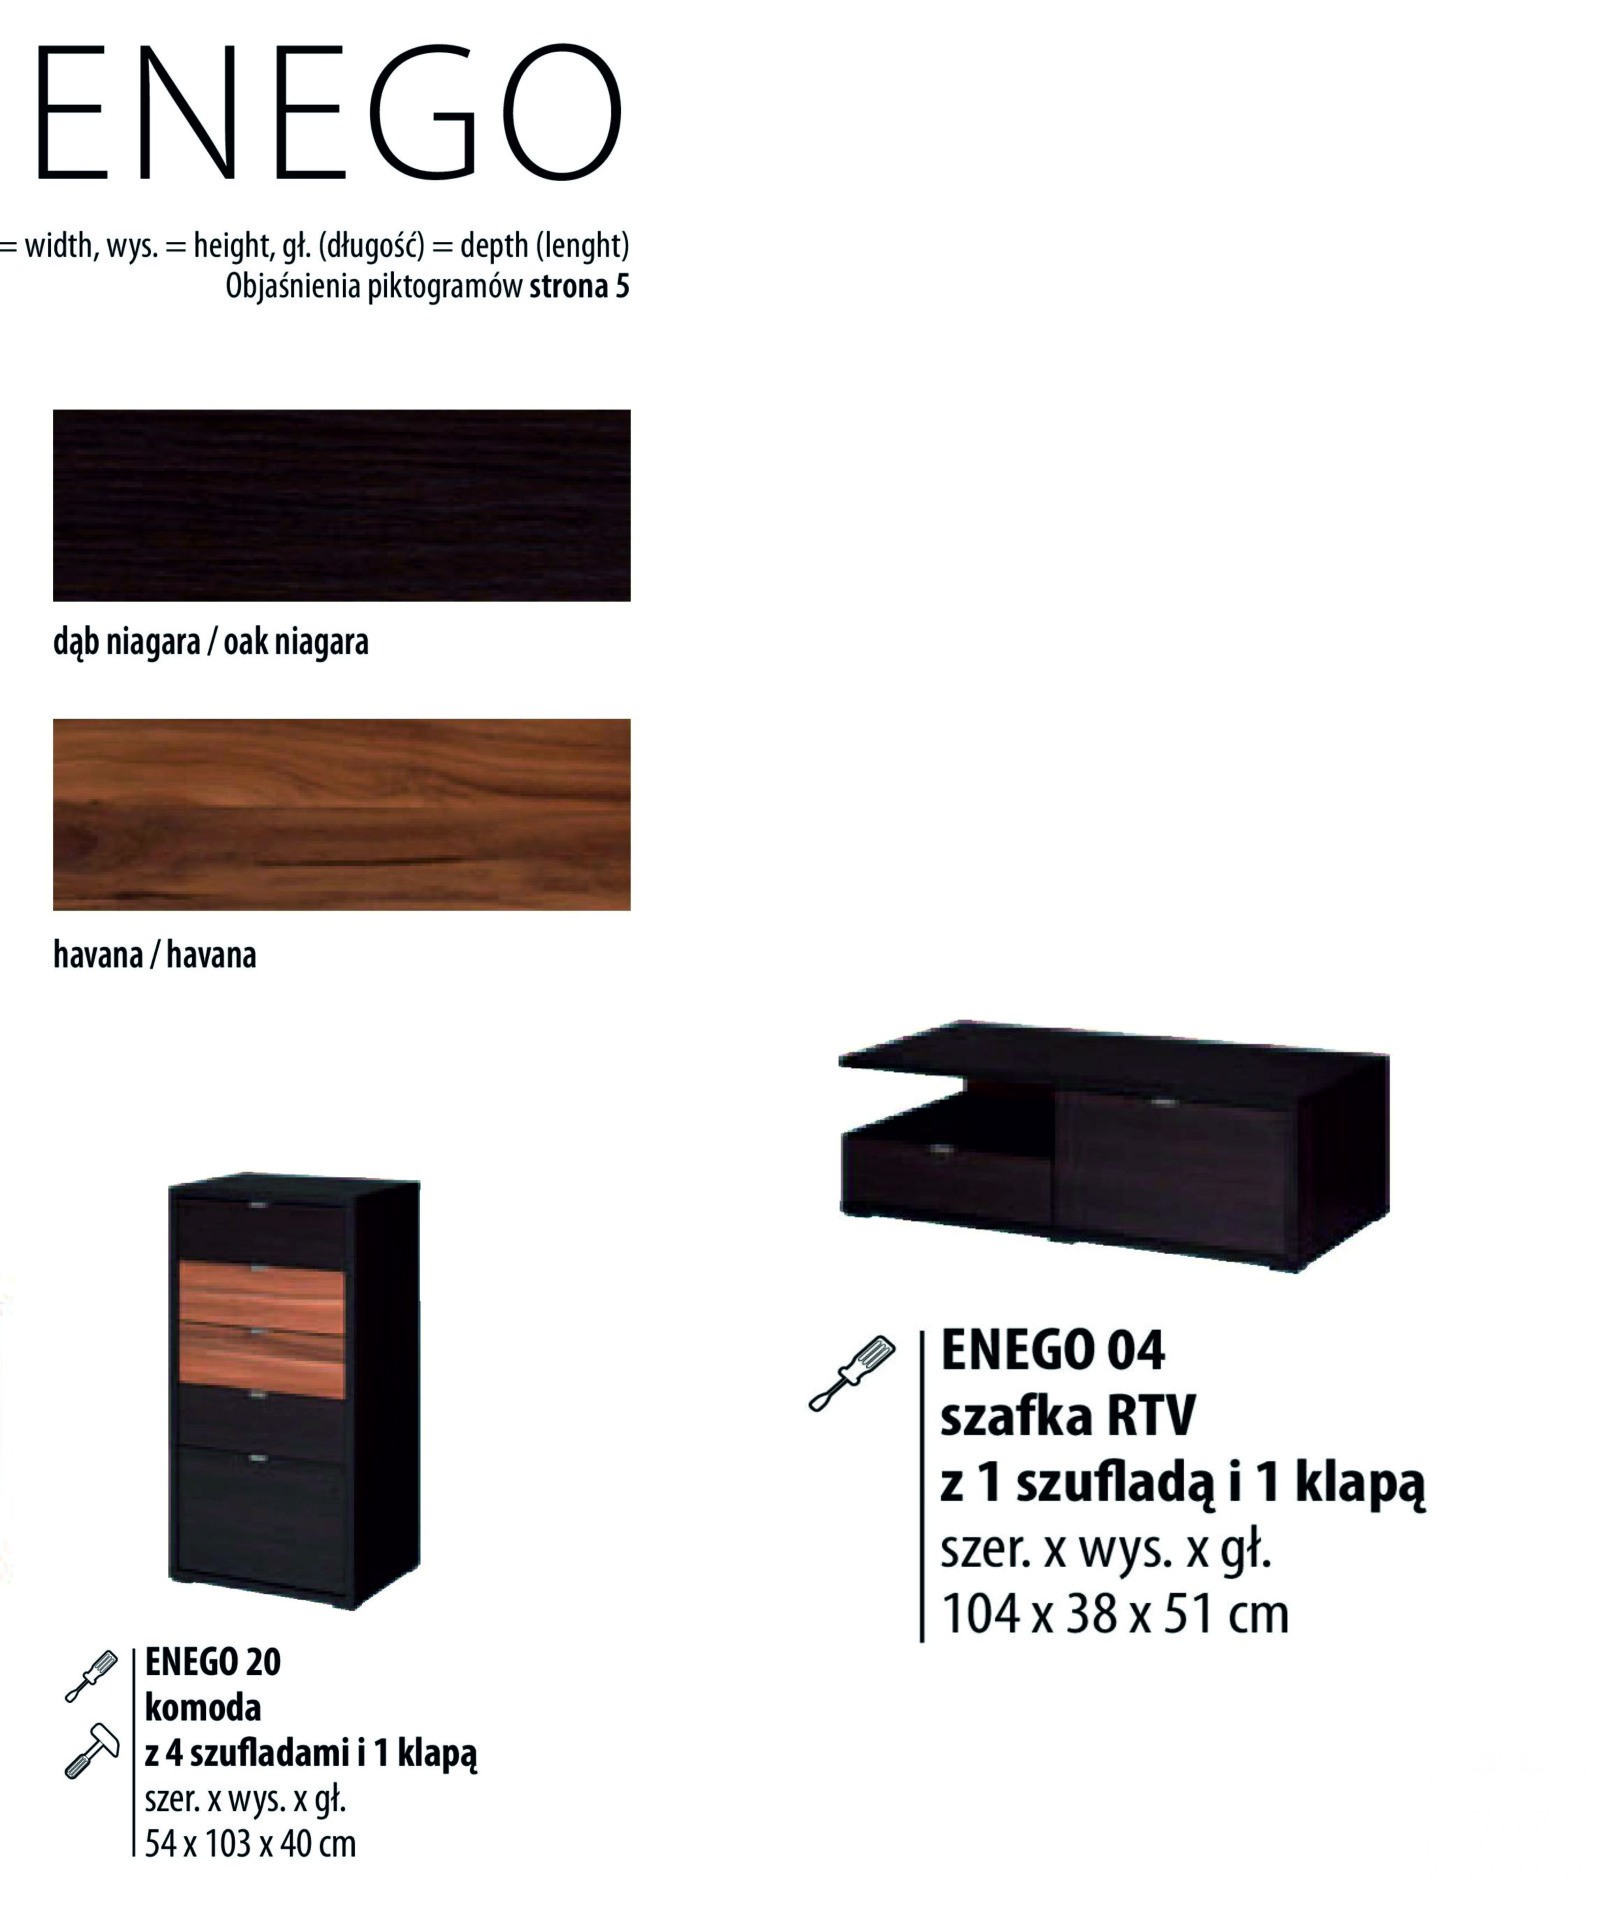 Мініатюра  об'єкта Enego